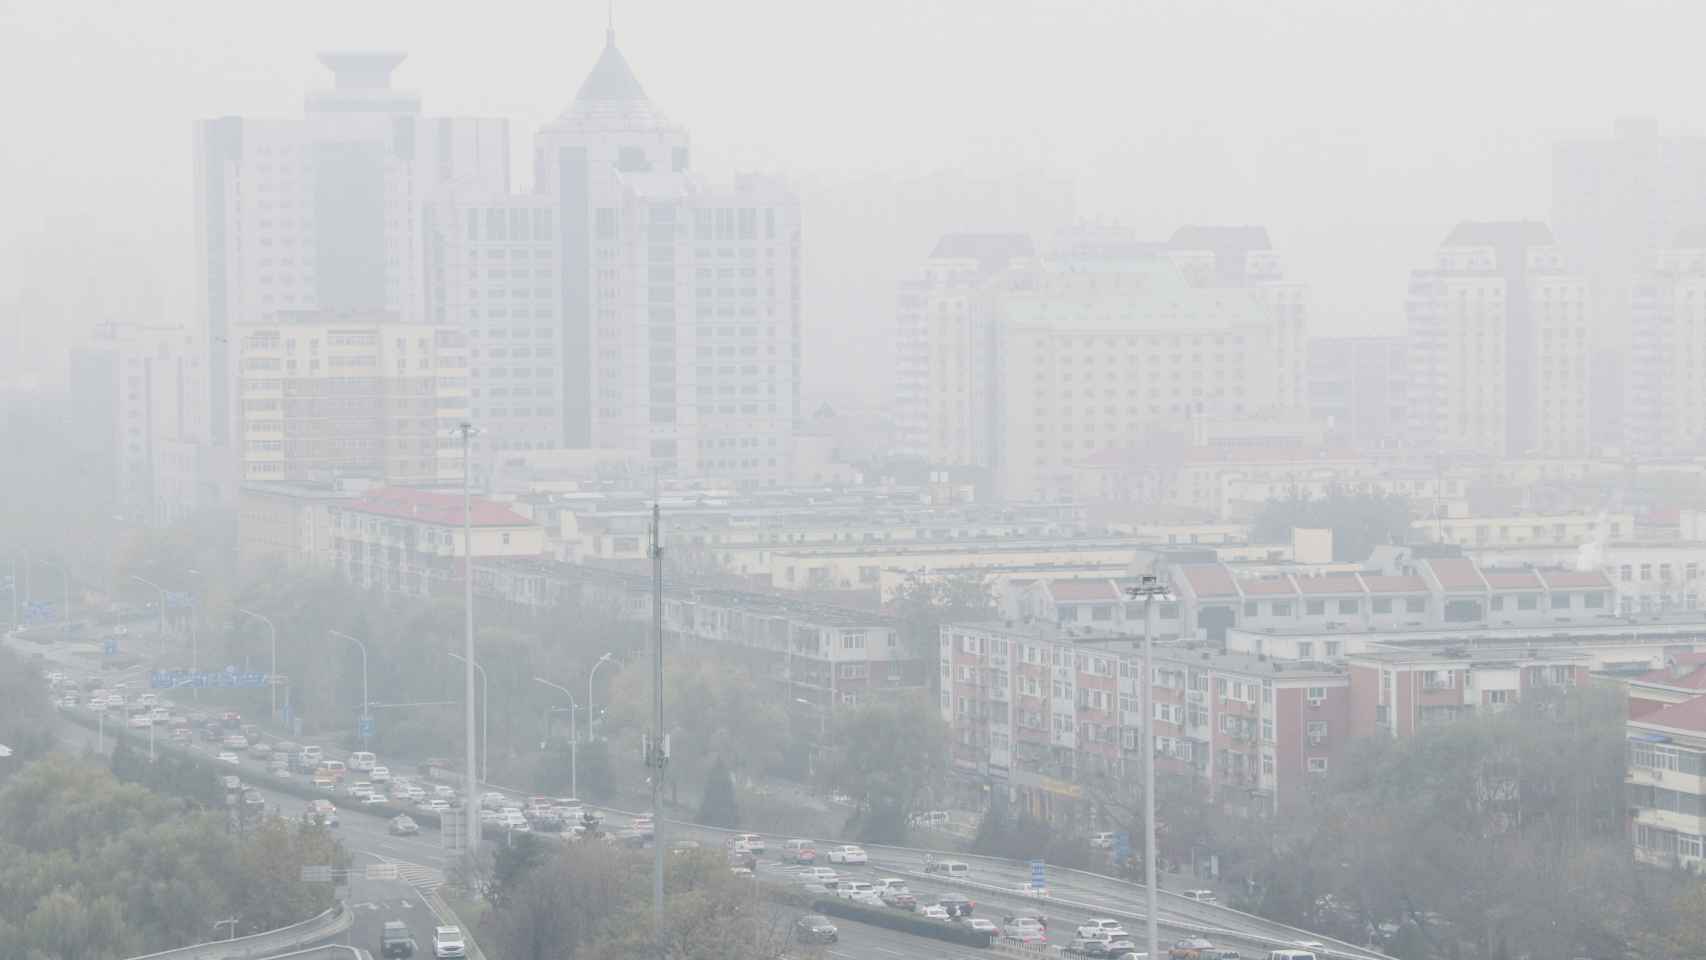 Una fuerte calima envuelve los edificios de Beijing